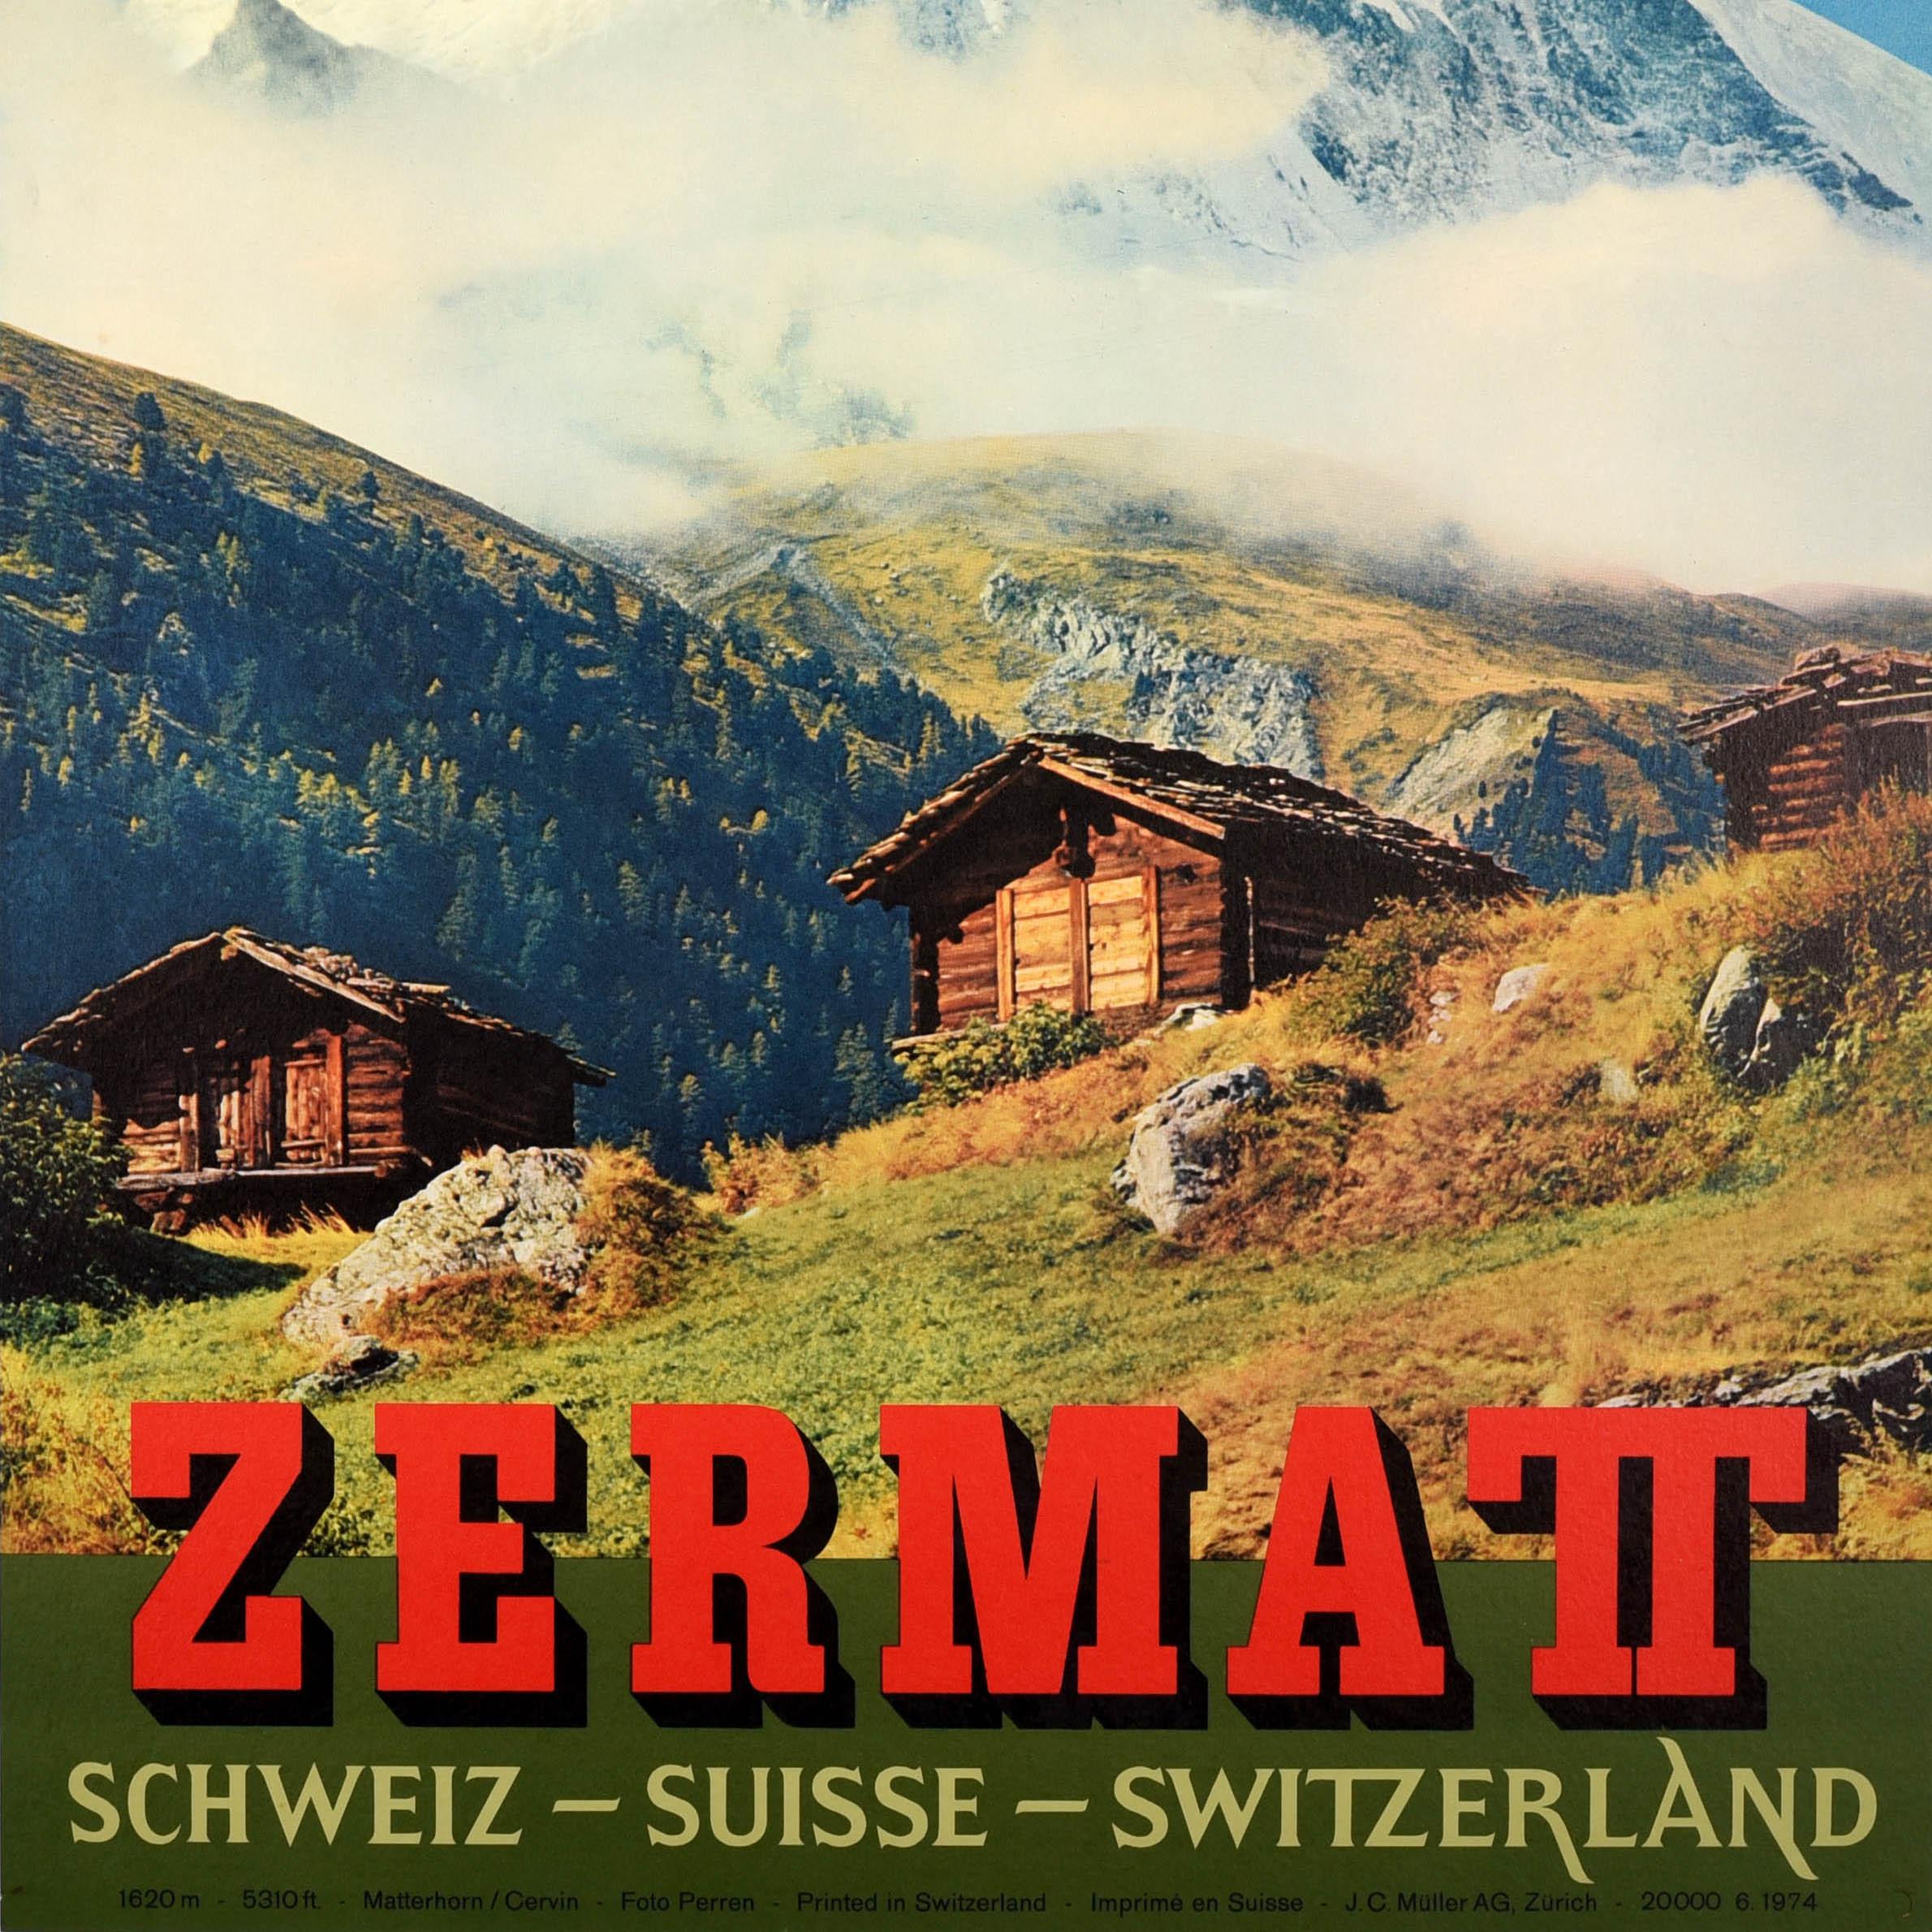 Swiss Original Vintage Travel Poster Zermatt Switzerland Matterhorn Perren Barberini